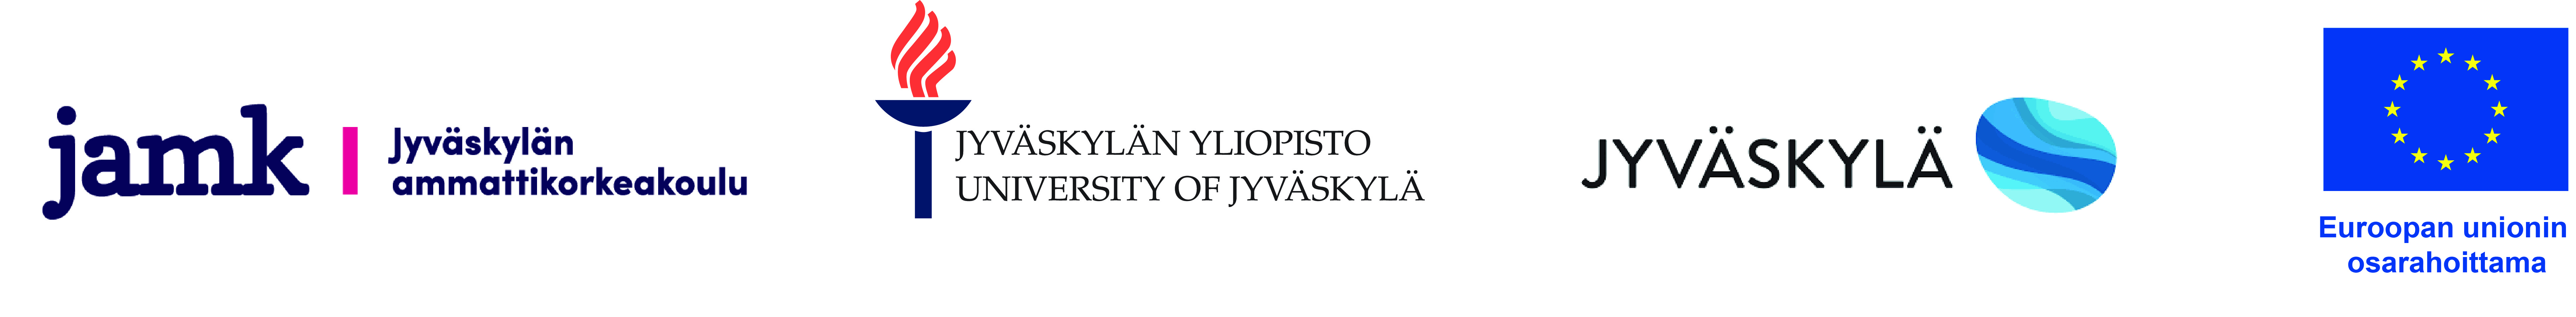 Jamkin, Jyväskylän yliopiston, Jyväskylän kaupungin ja EU:n logot